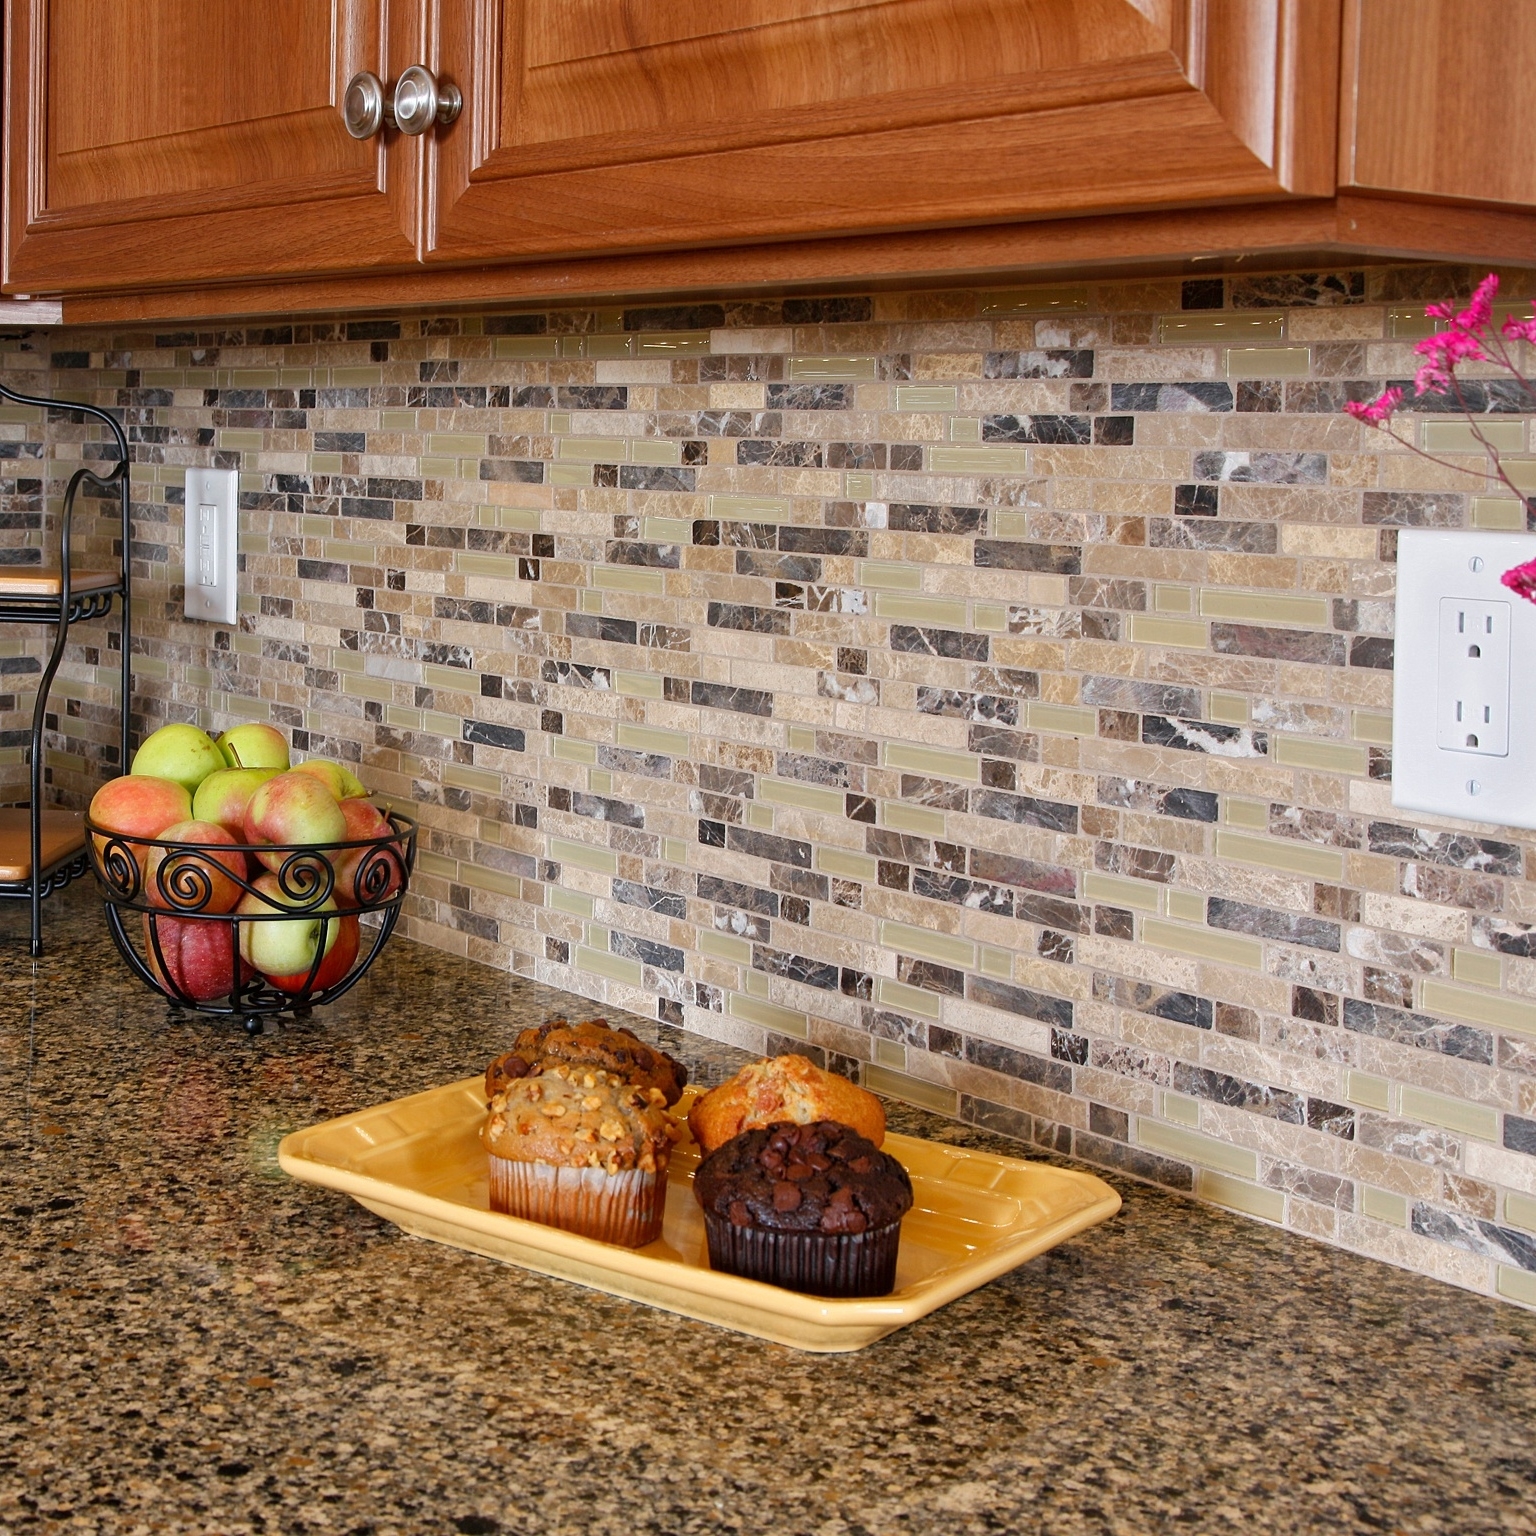 How Backsplash Tile Will Make Or Break Your Kitchen Nicole Janes Design